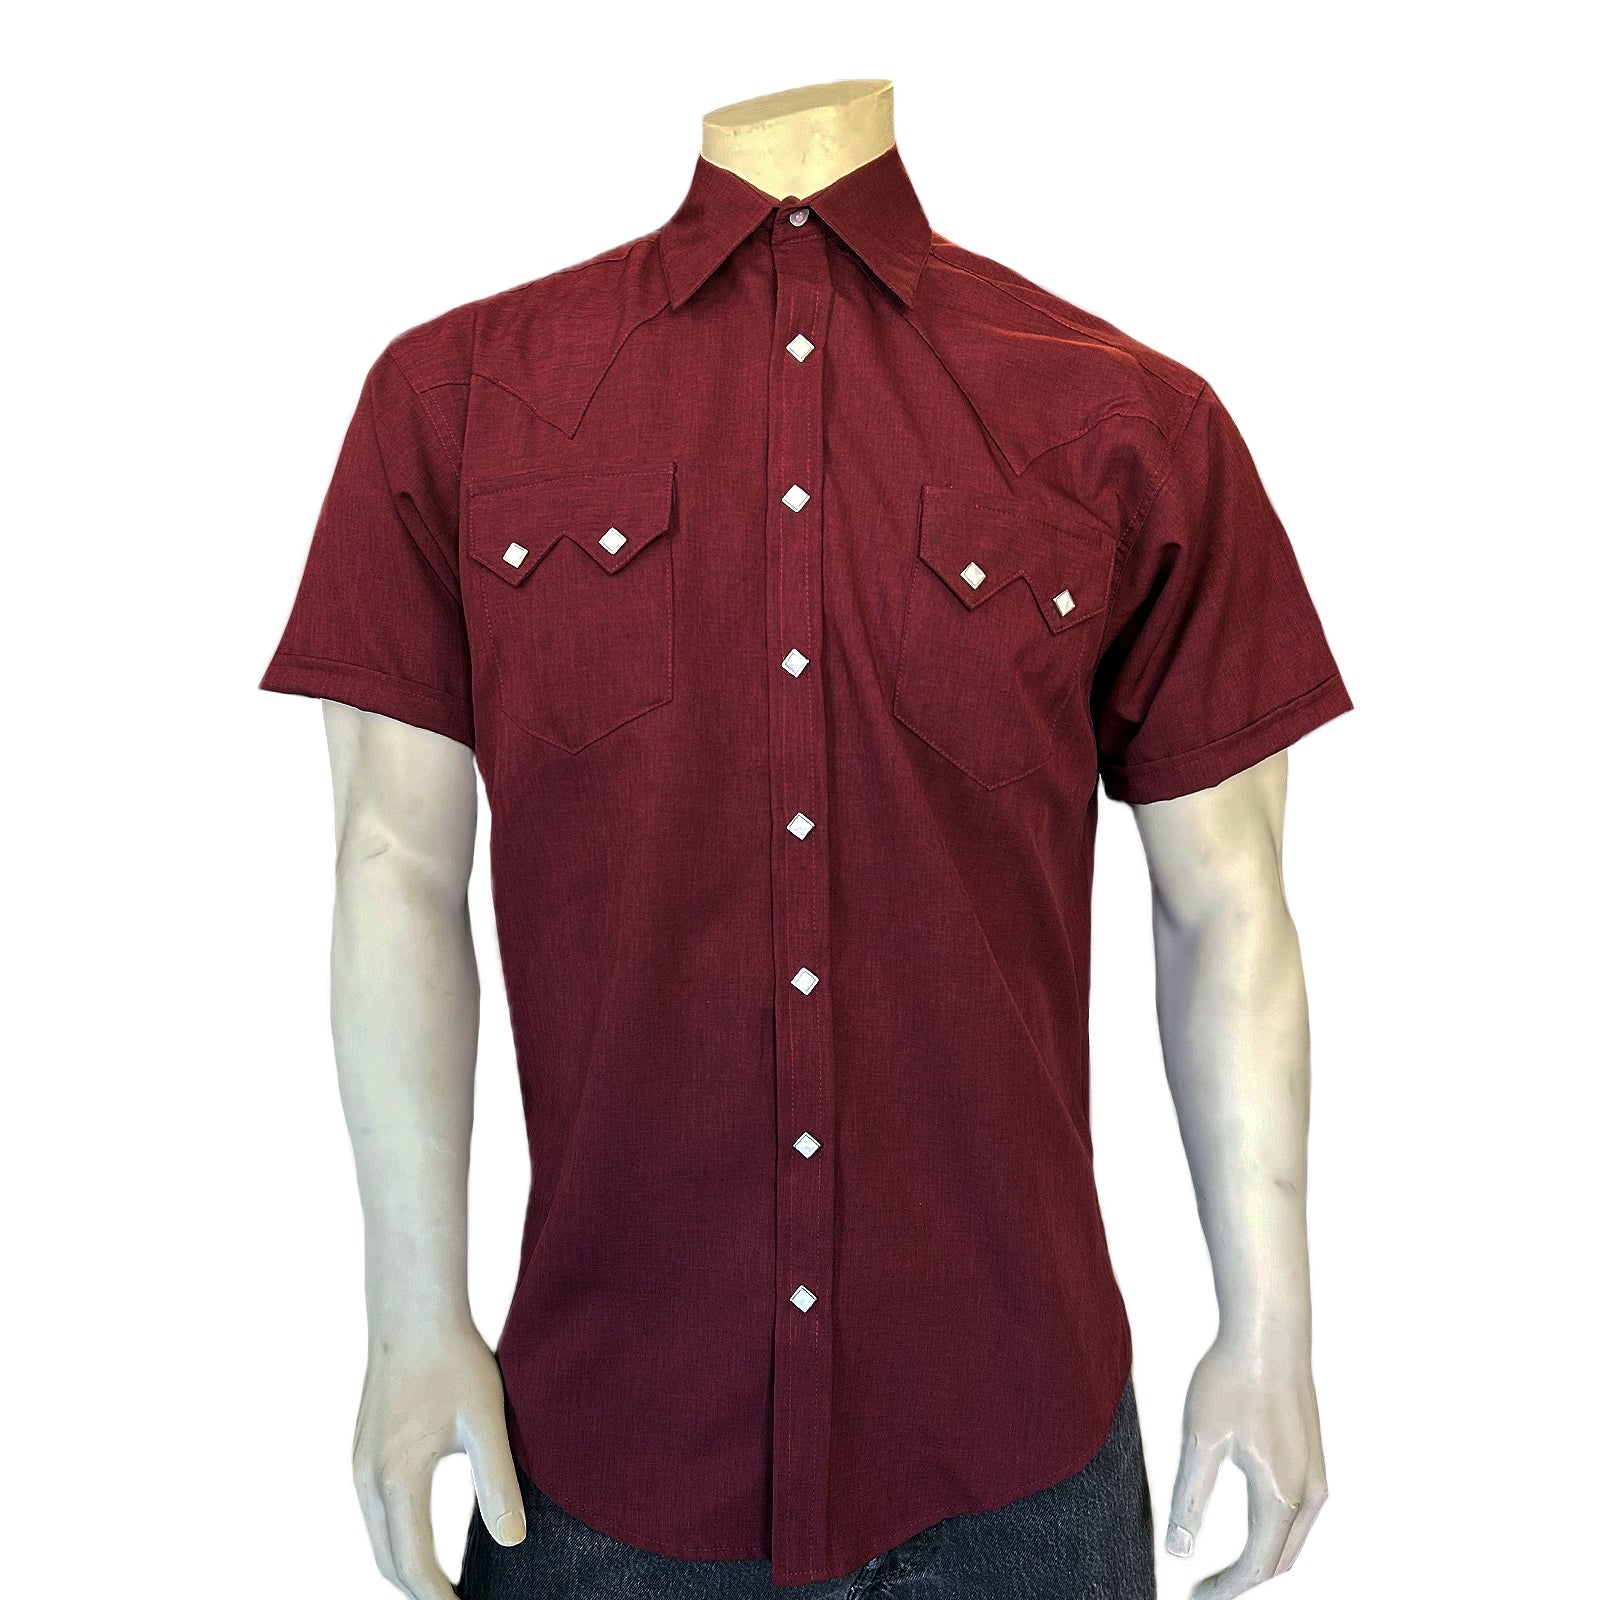 Buy Men's Double Cuff Maroon Shirt Online